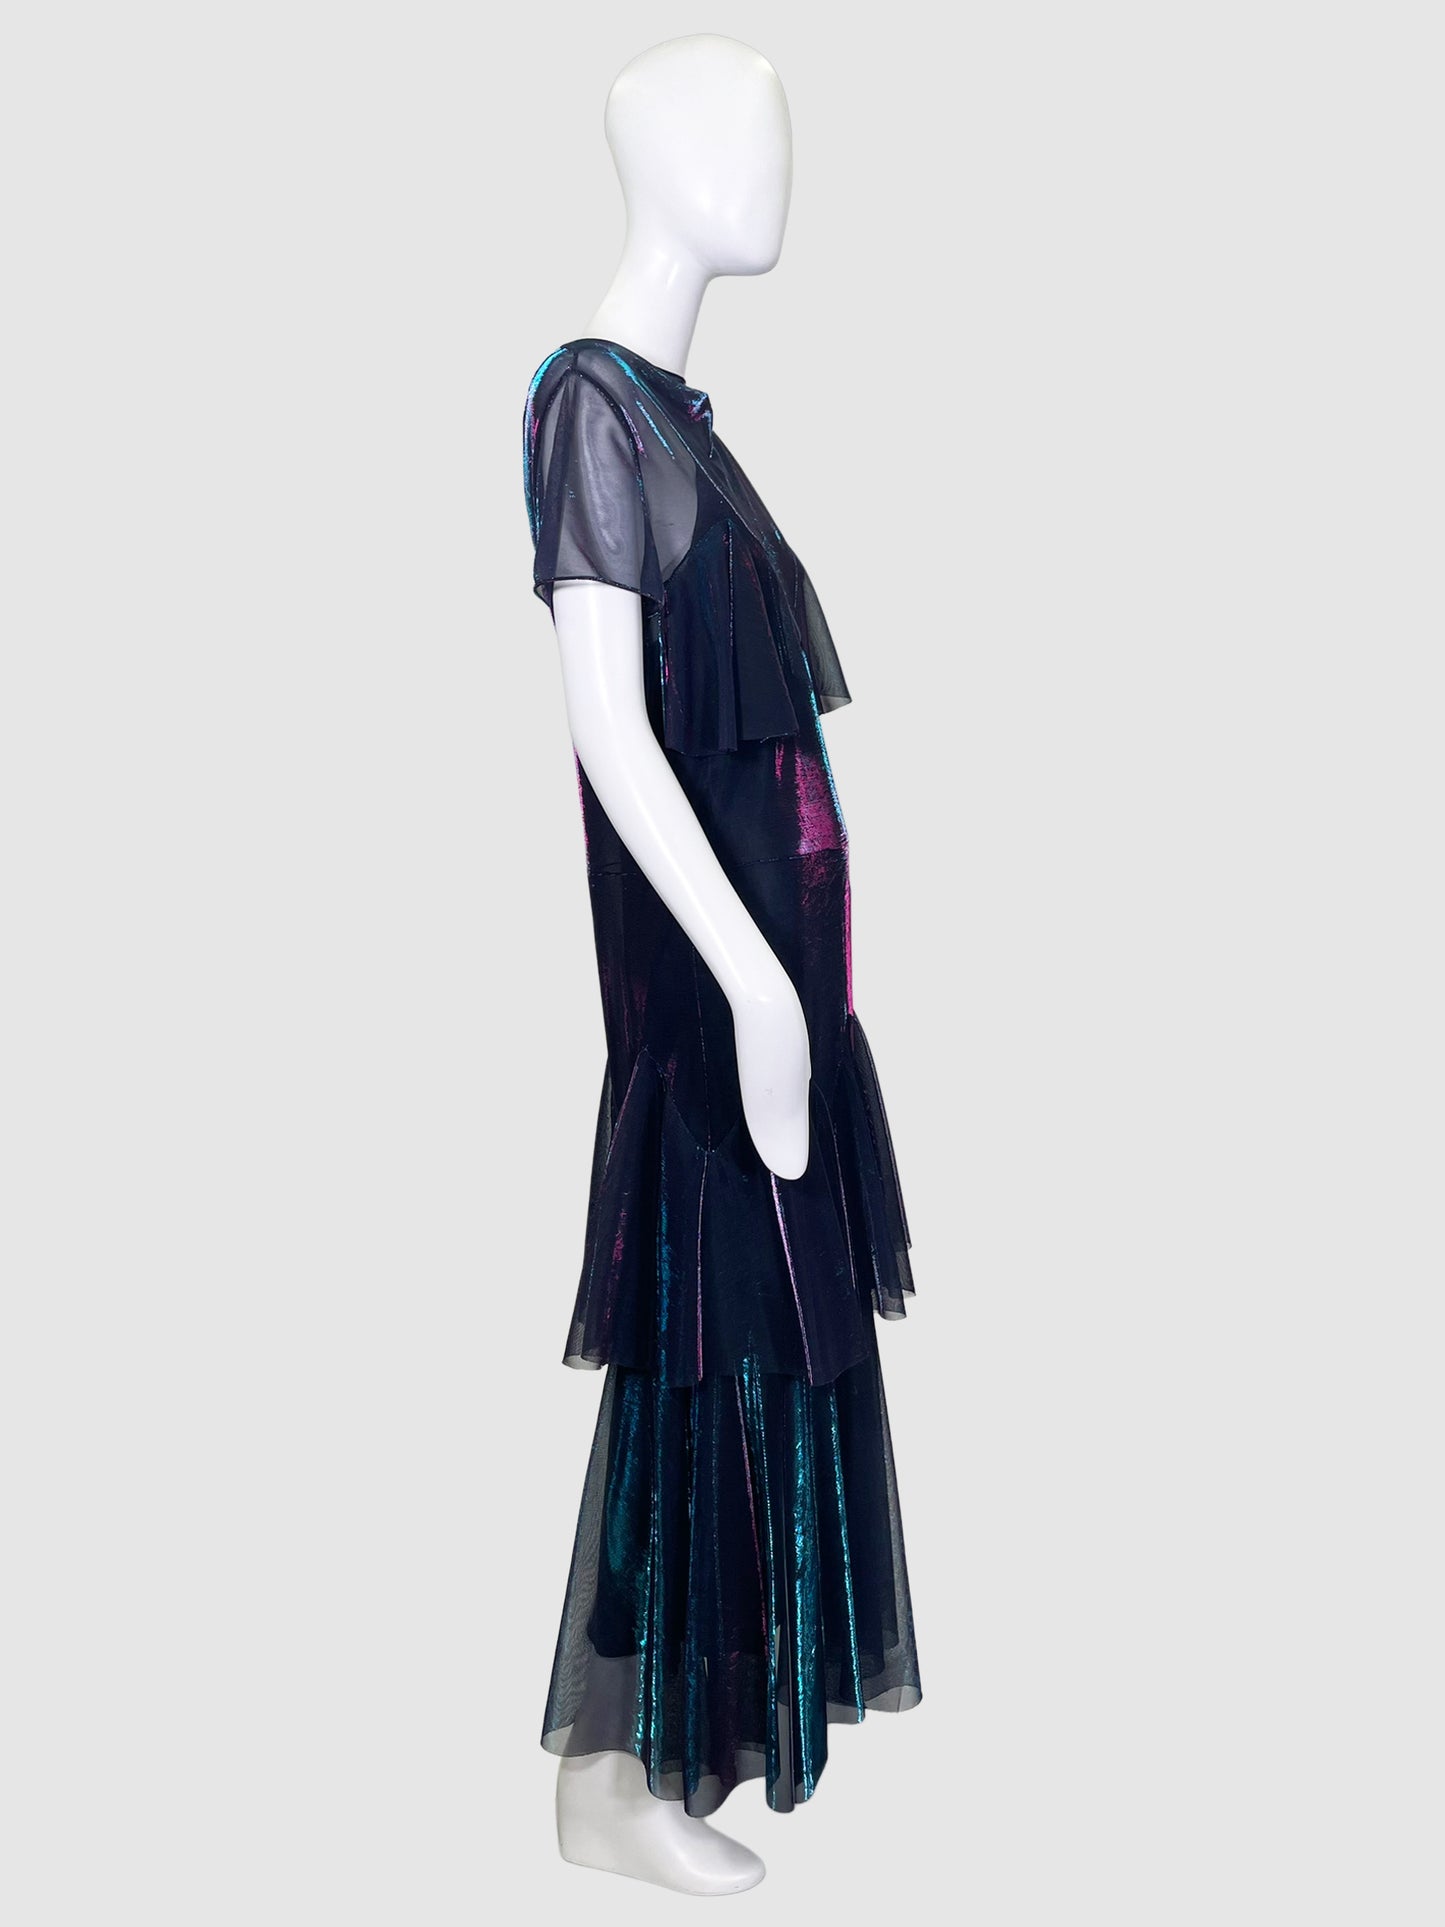 Maison Margiela Layered Mesh Holographic Maxi Dress - Size 44